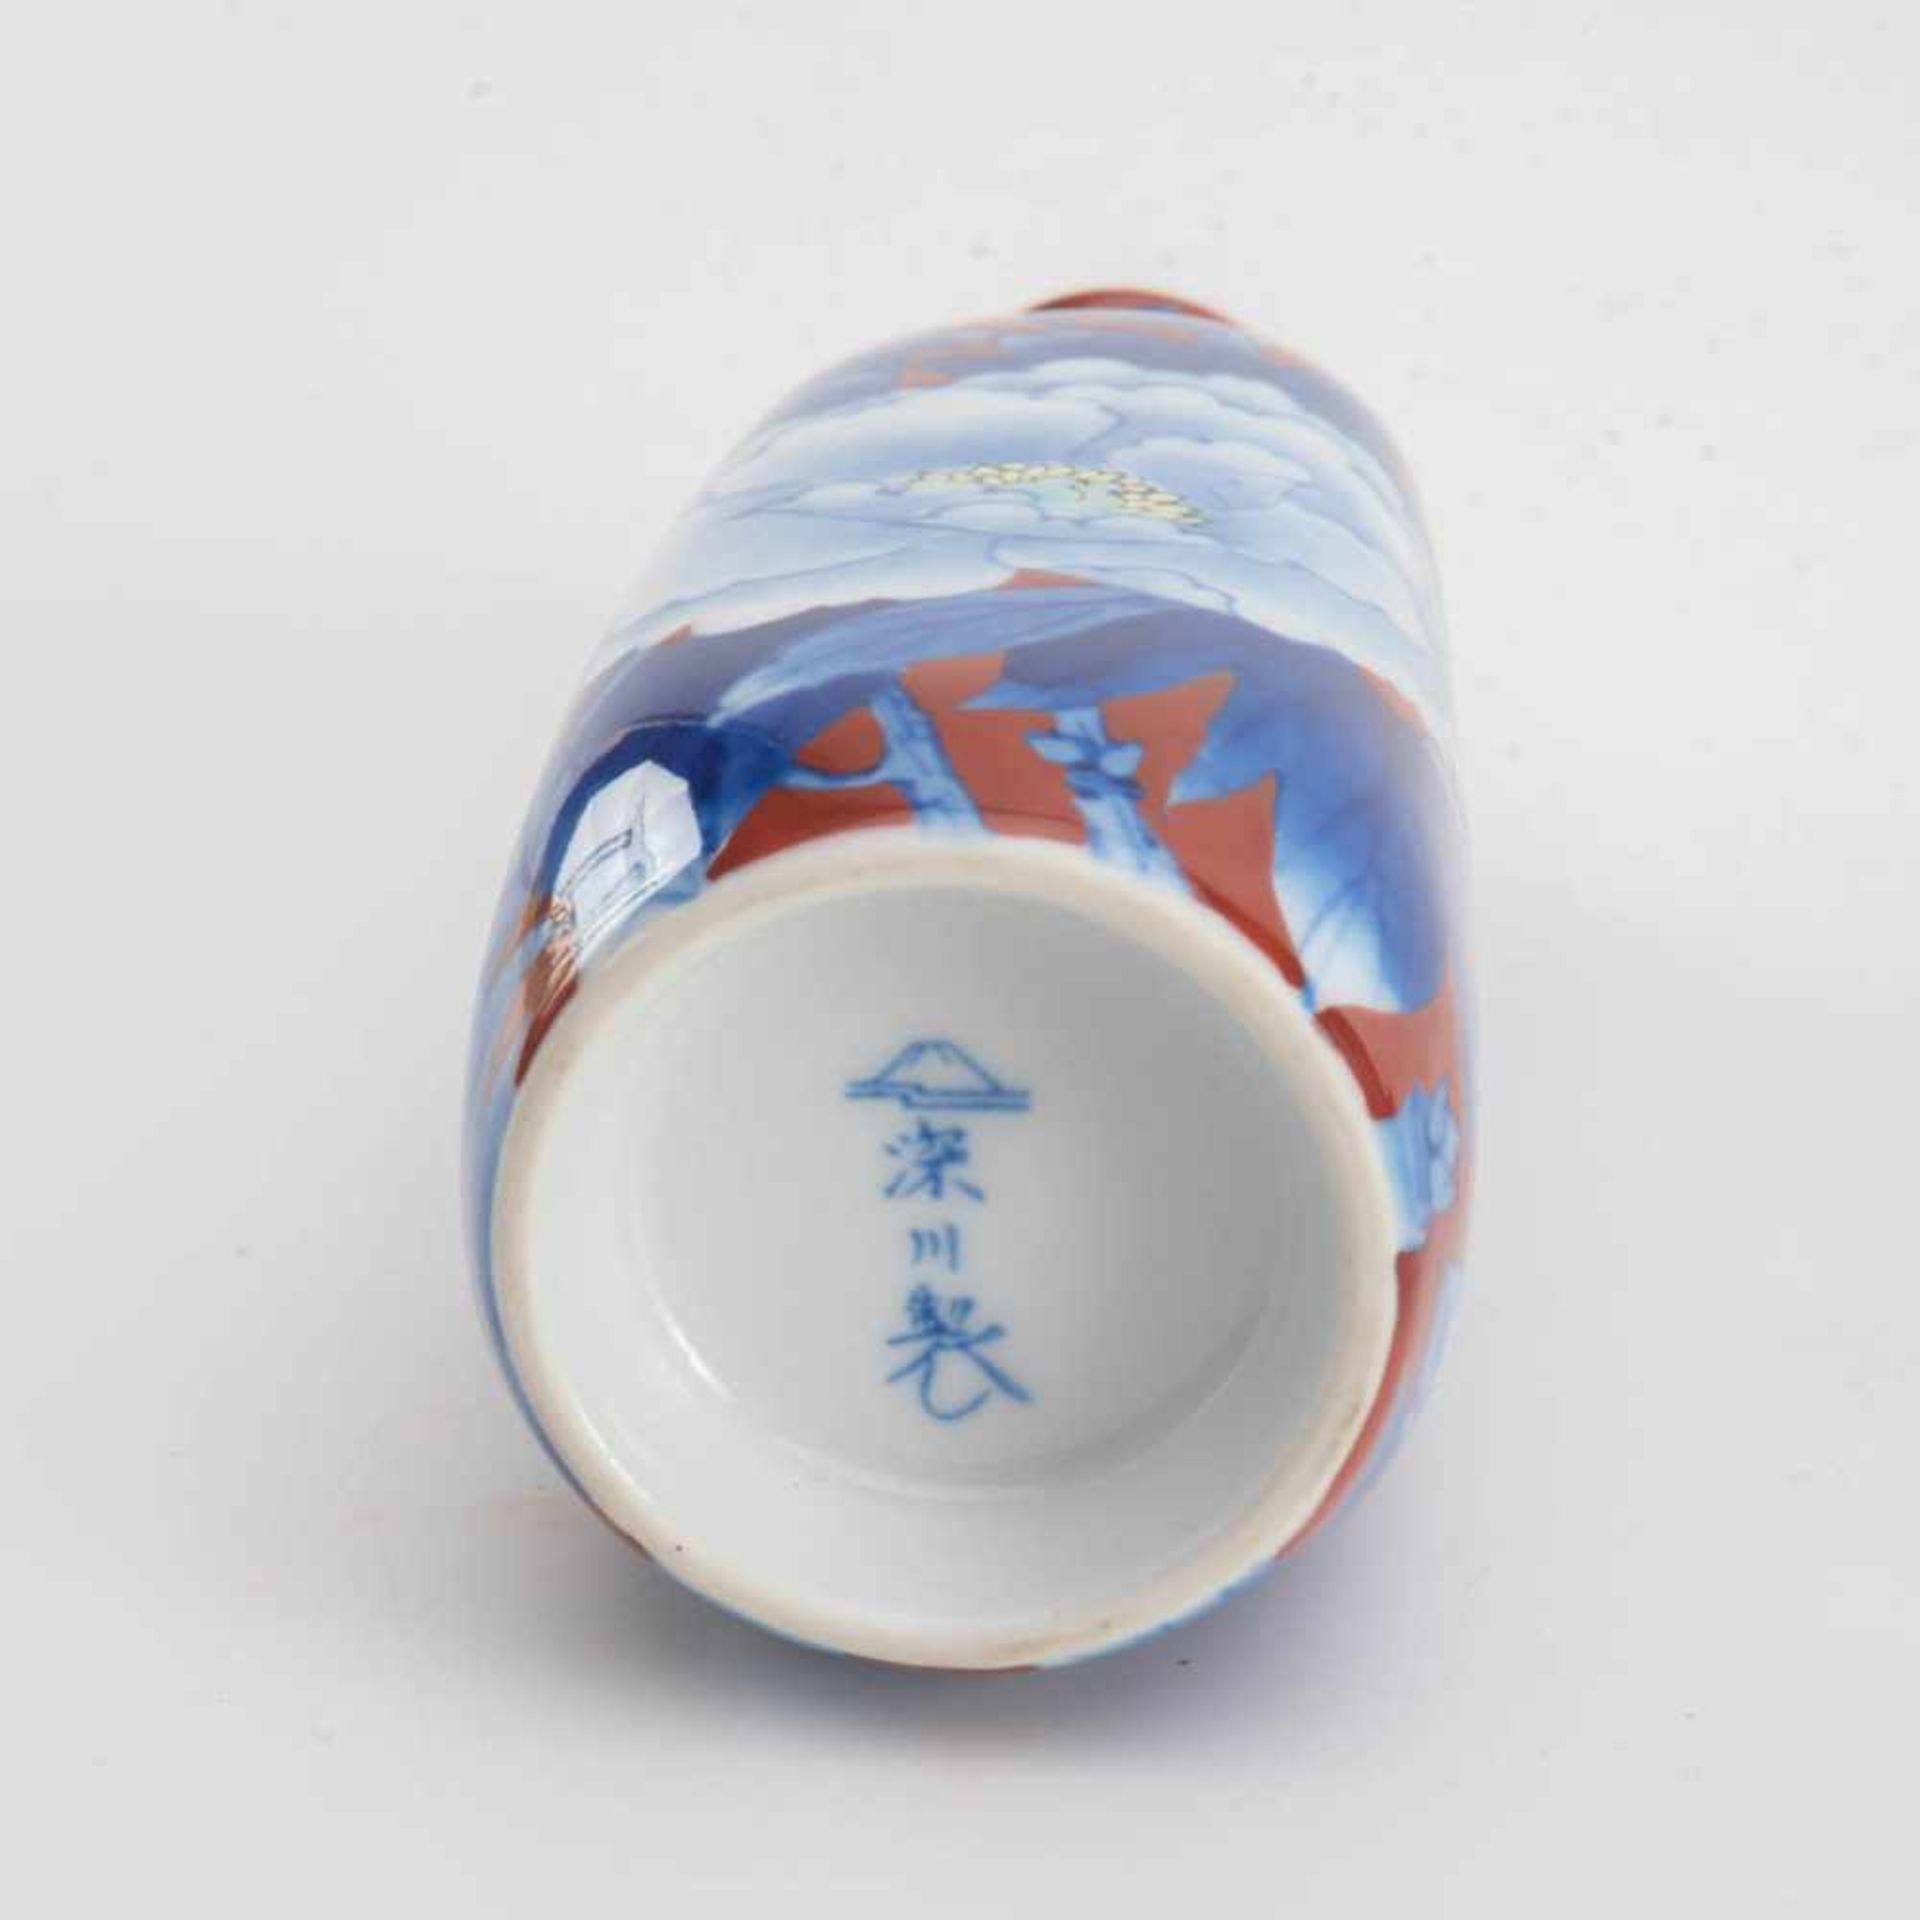 5-teiliges Sake-Service, Japan Porzellan auf eisenrotem Fond mit großen Päonienblüten und - Image 2 of 2